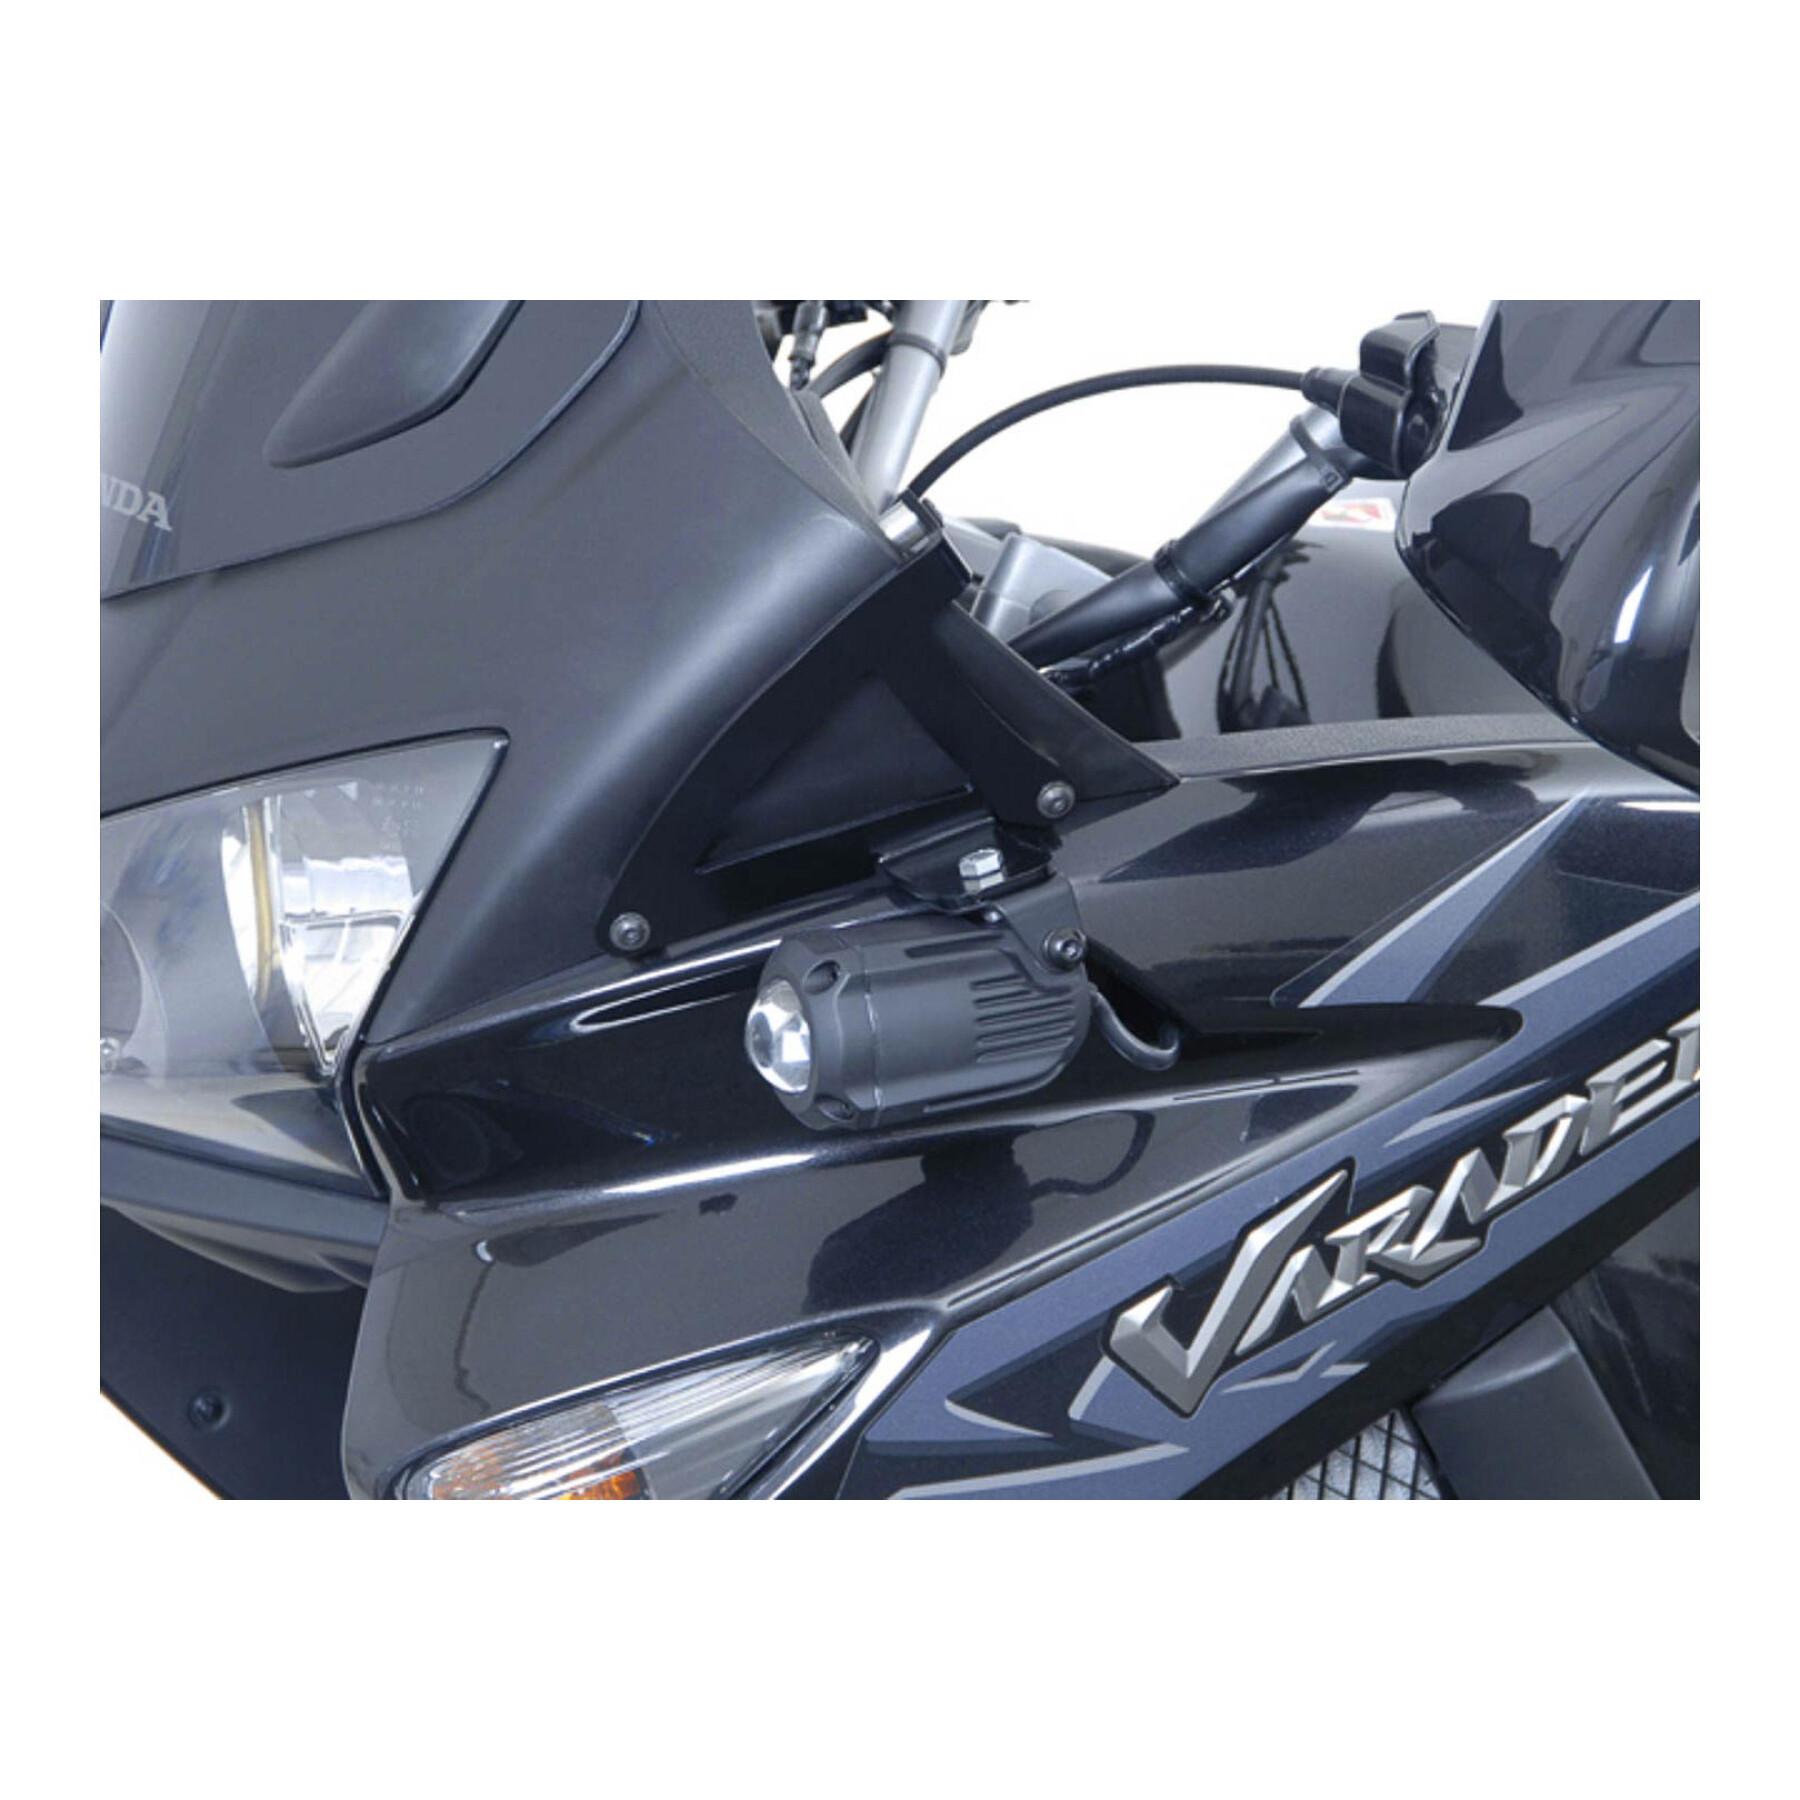 Additional led motorcycle light Sw-Motech Xl1000v Varadero (01-11)